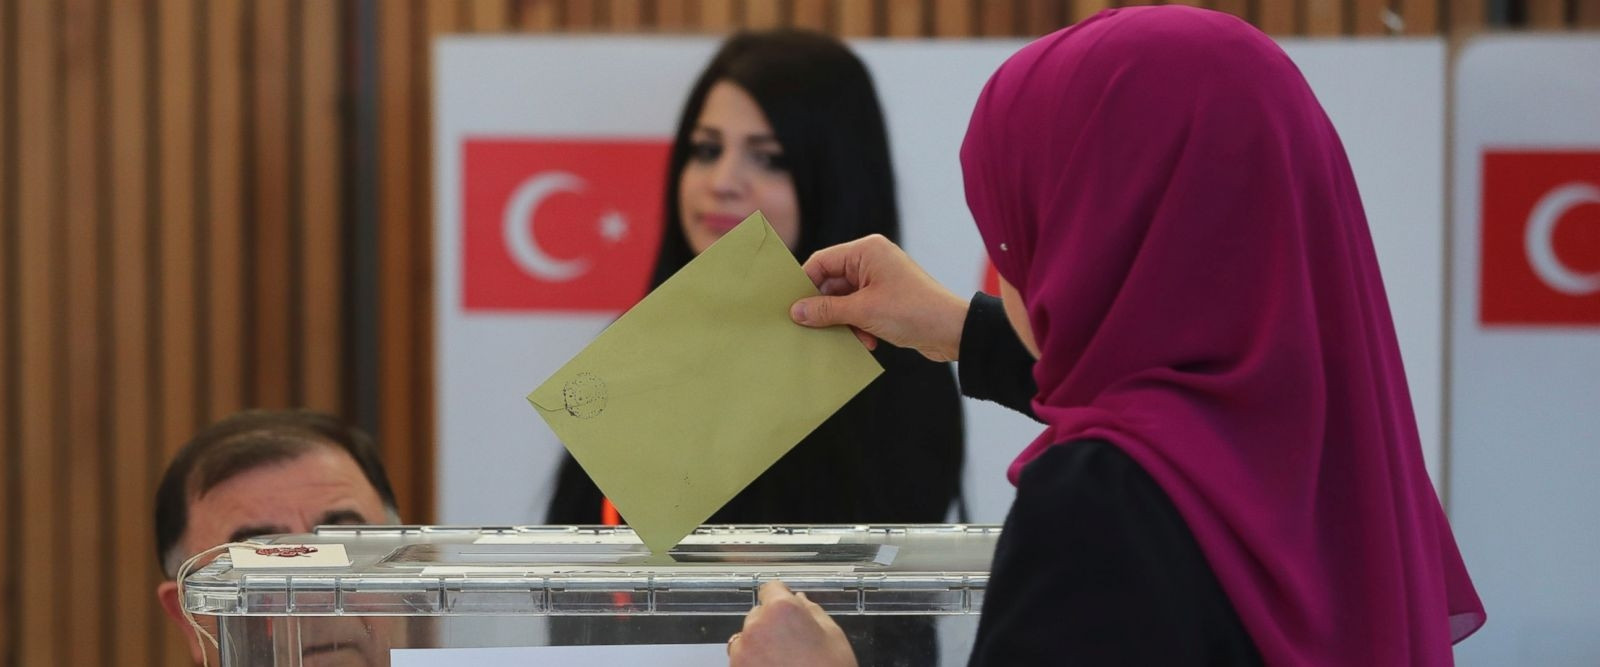 Σοκαρισμένο το γερμανικό πολιτικό σύστημα από την ψήφο της τουρκικής διασποράς